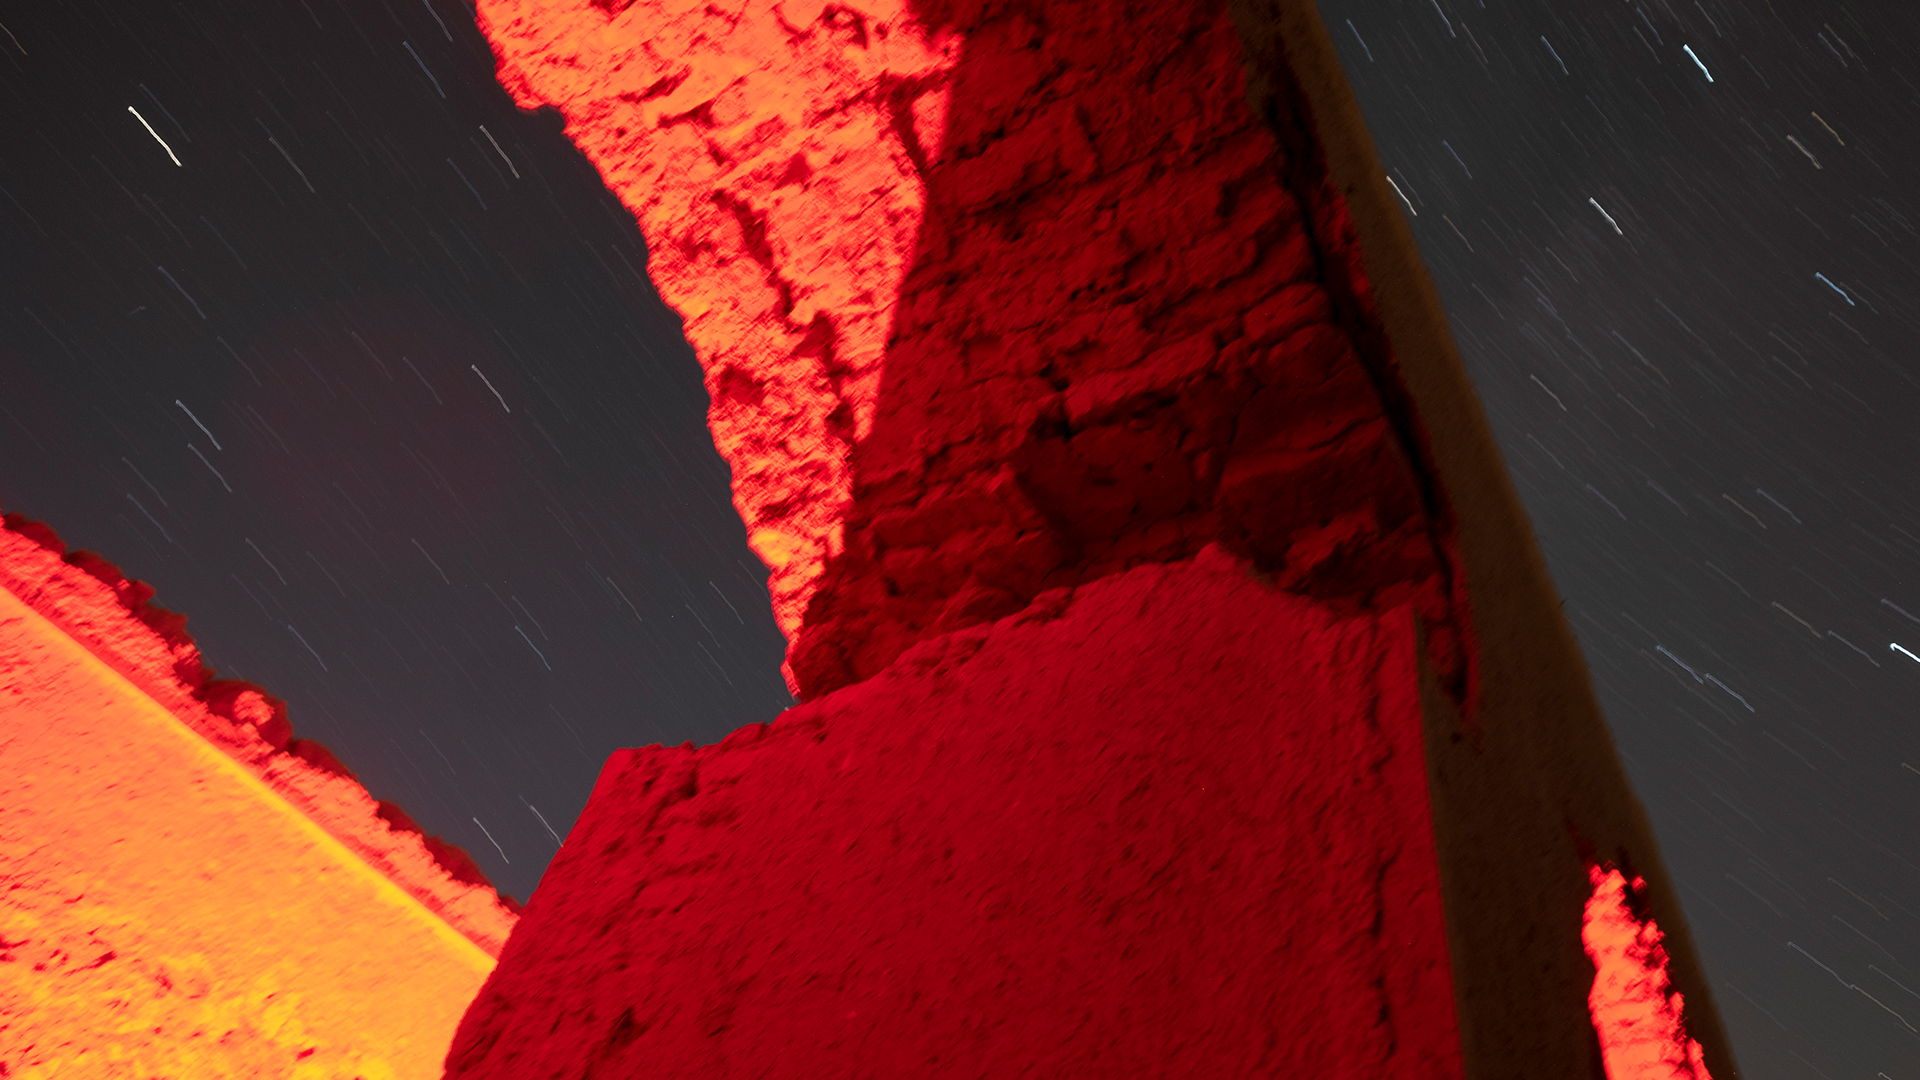 Perseid meteor yağmuru sırasında terk edilmiş tarihi kervansarayların ve gece gökyüzünün görünümü.